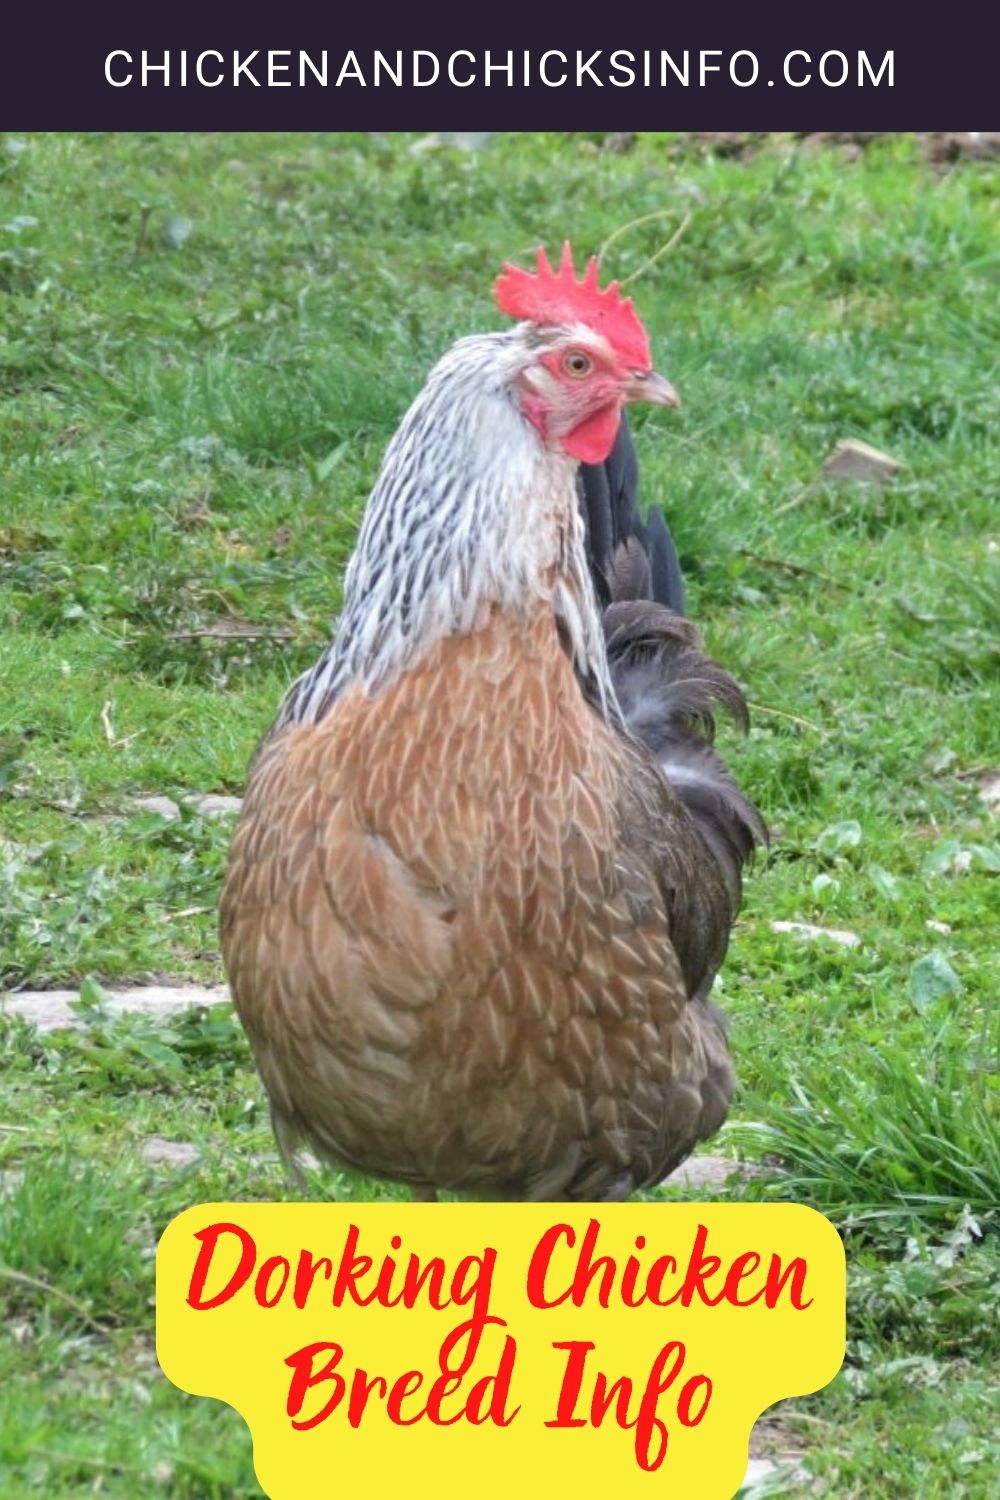 Dorking Chicken Breed Info pinterest image.